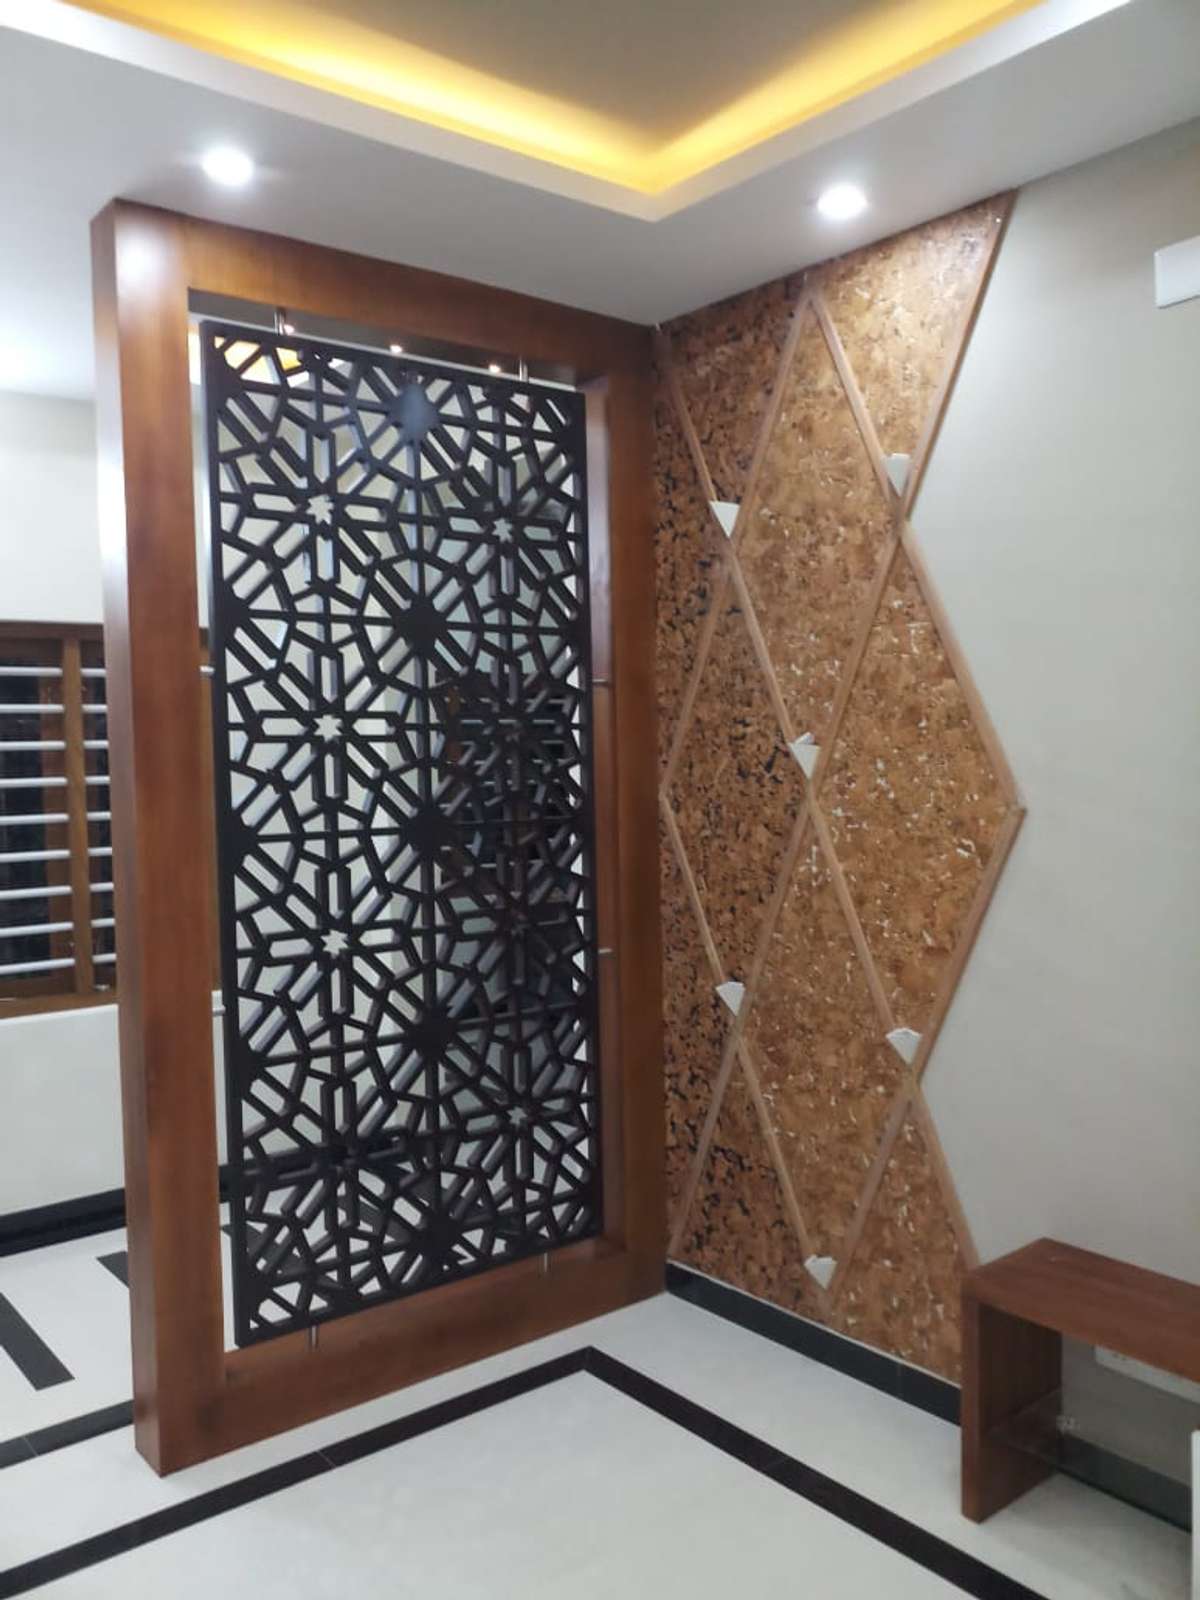 Designs by Interior Designer CABINET stories 9495011585, Thrissur | Kolo